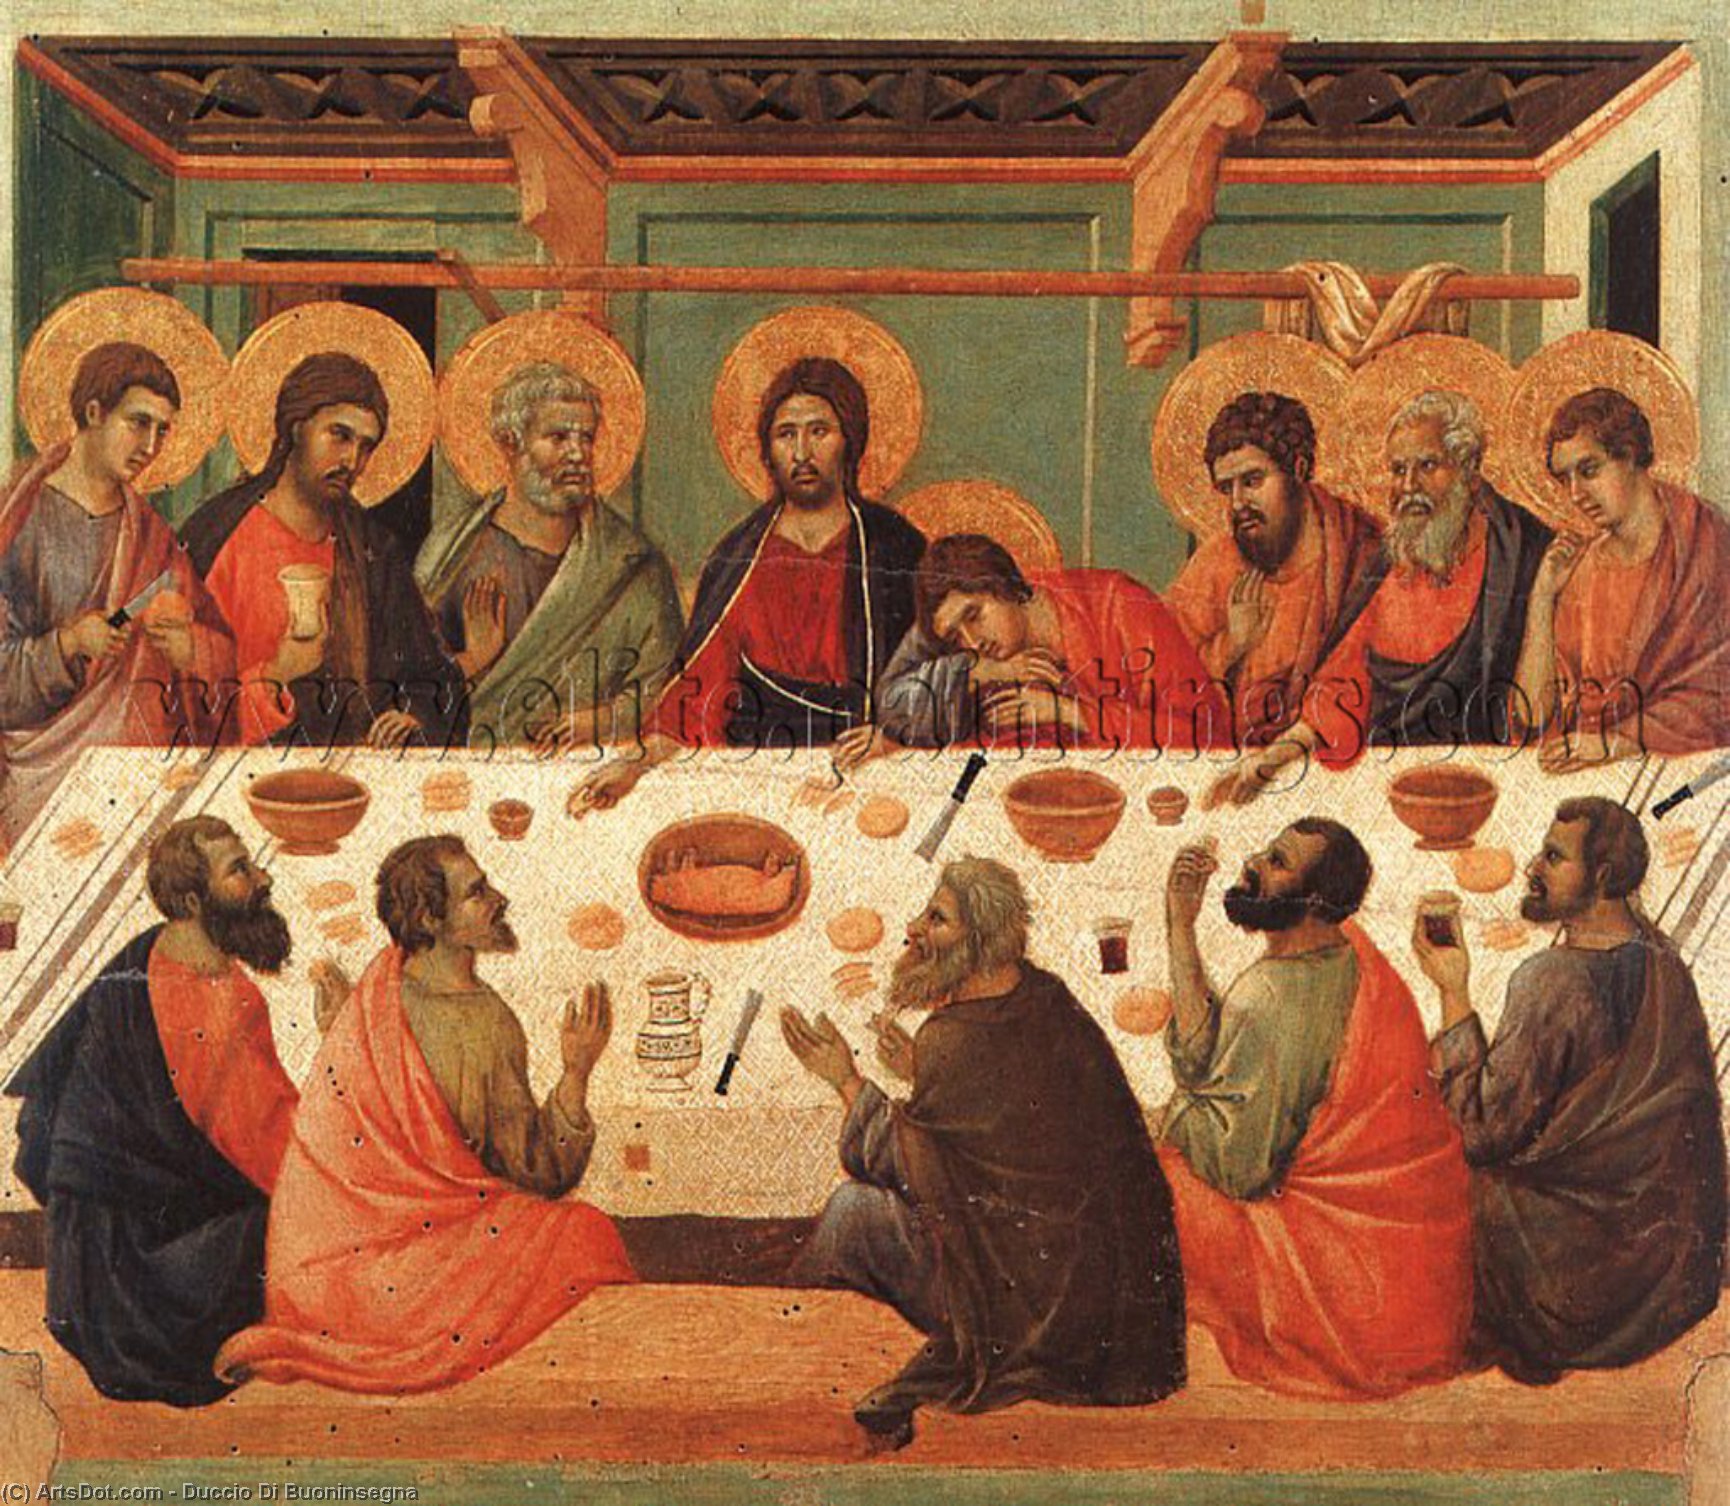 WikiOO.org - Encyclopedia of Fine Arts - Maleri, Artwork Duccio Di Buoninsegna - Last Supper